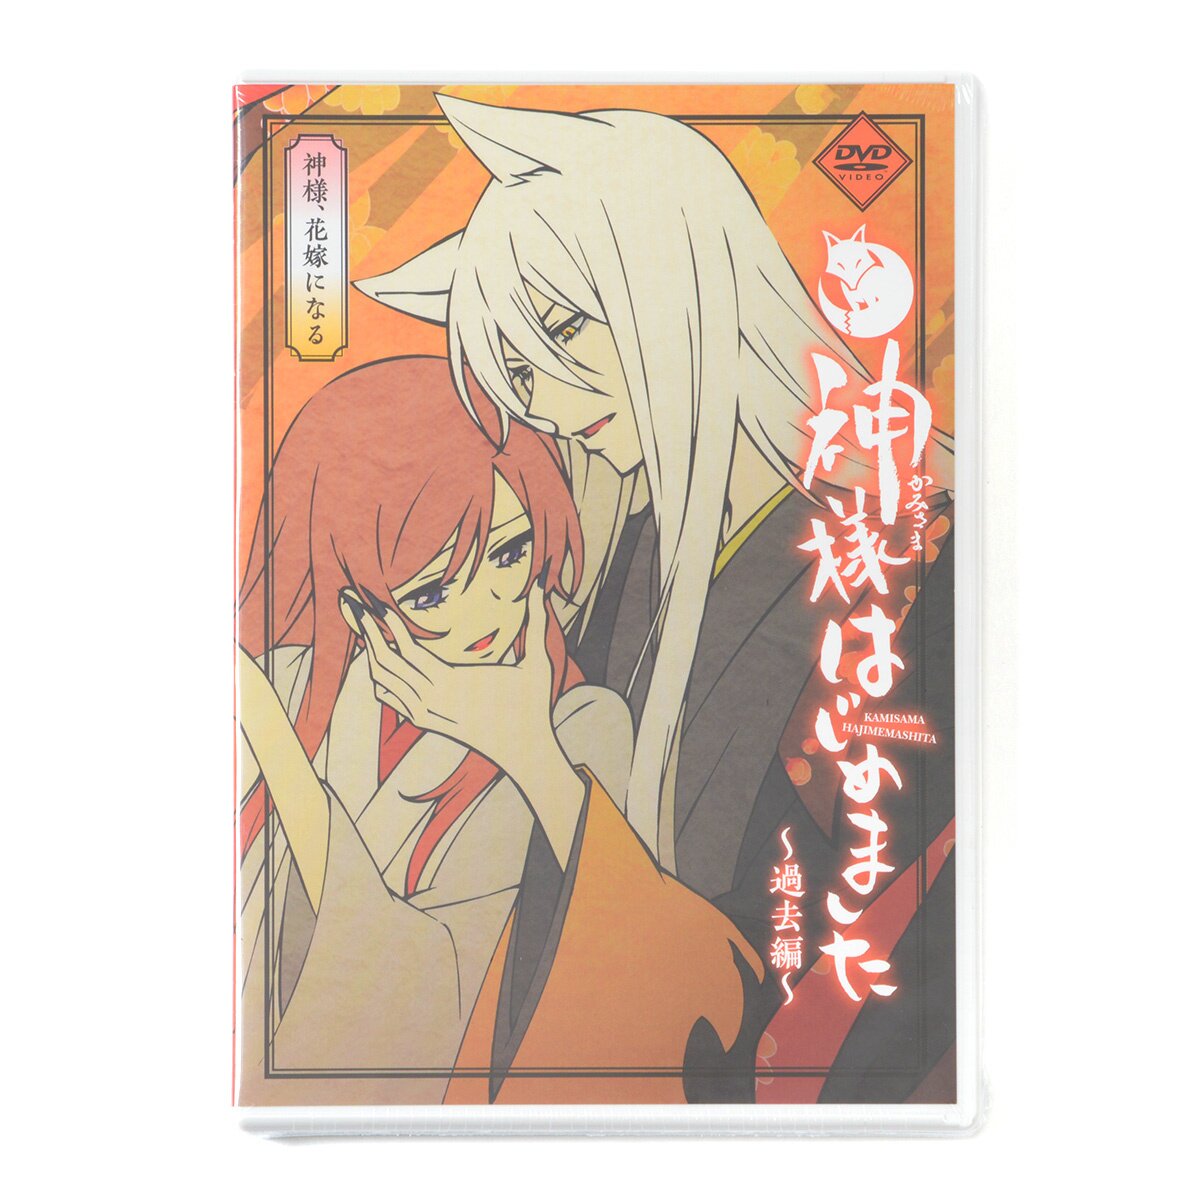 Kamisama Kiss Manga Volume 24